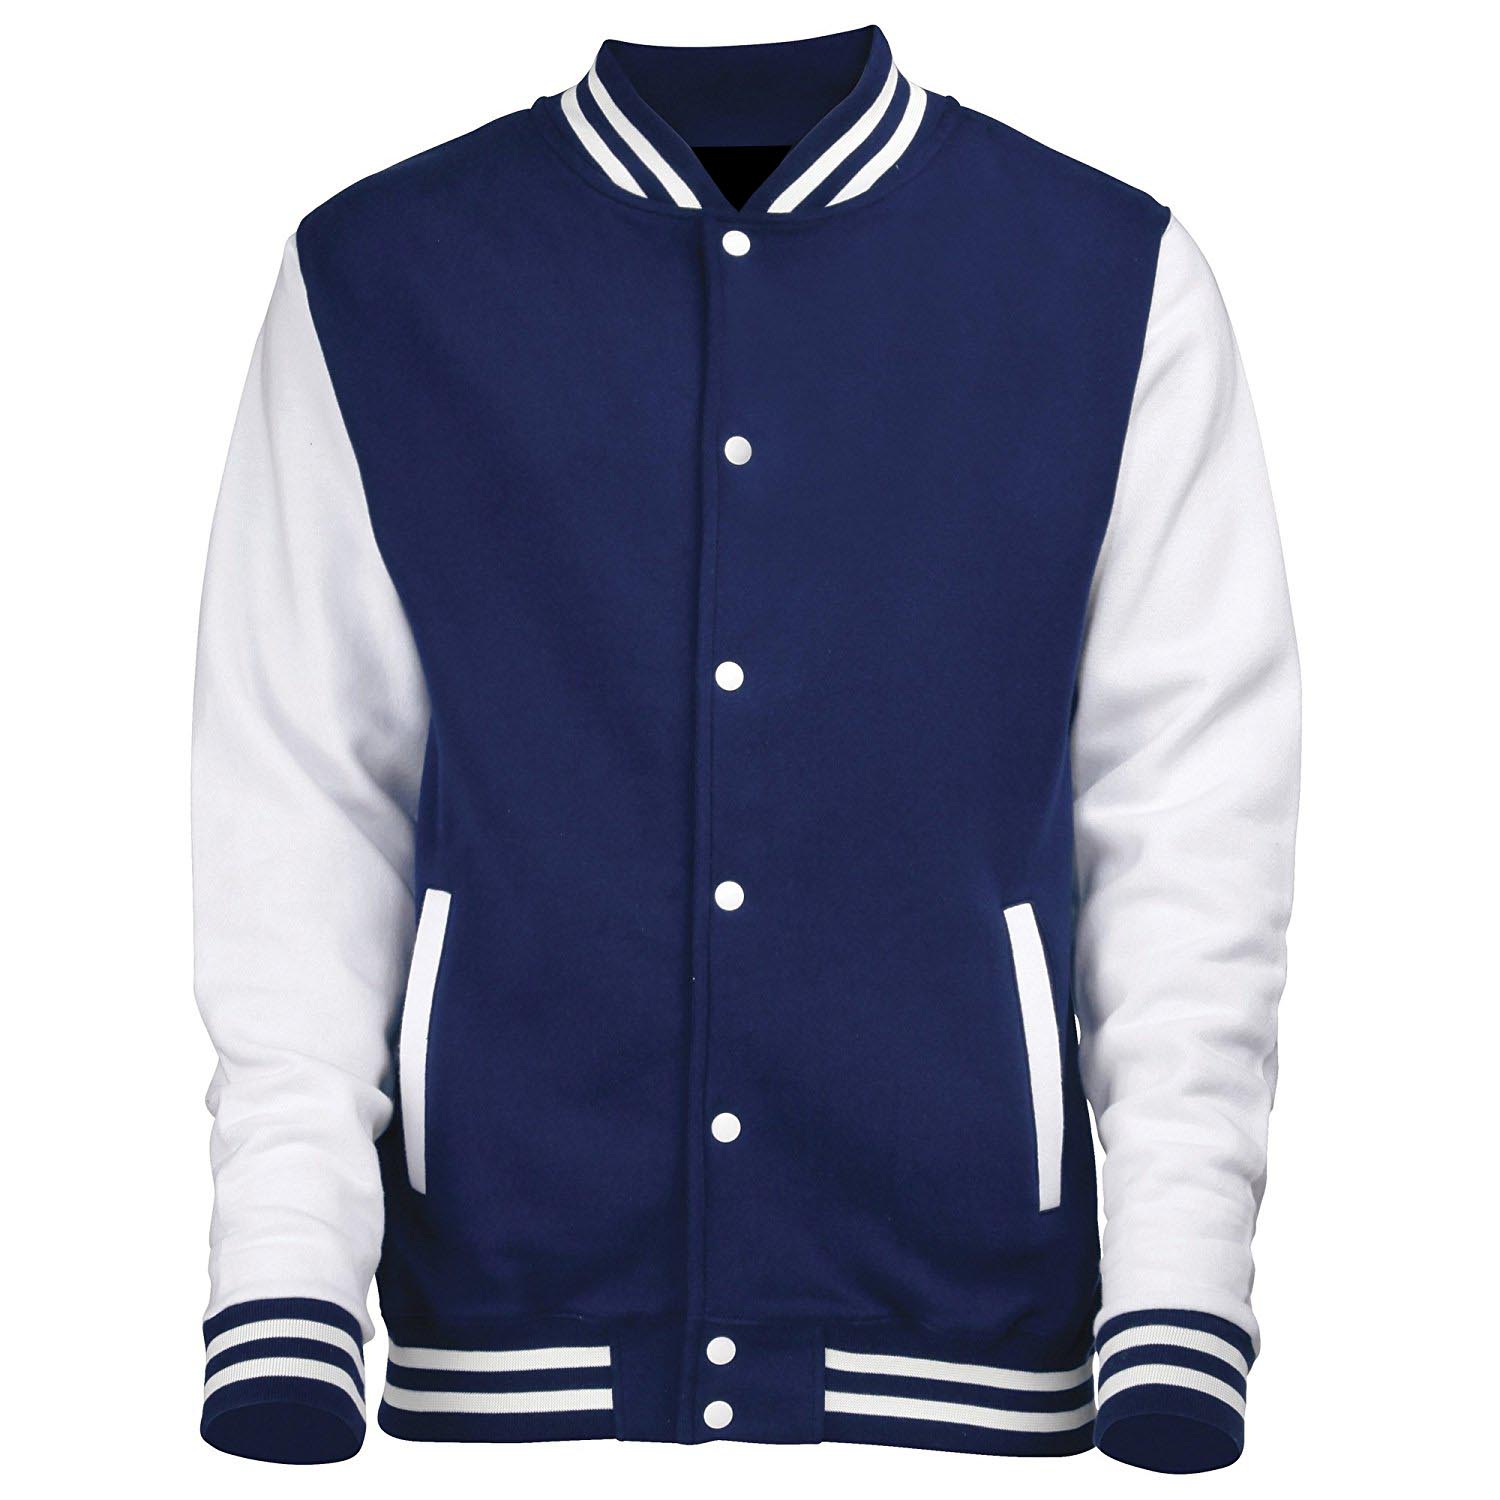 Varsity Cotton Jacket